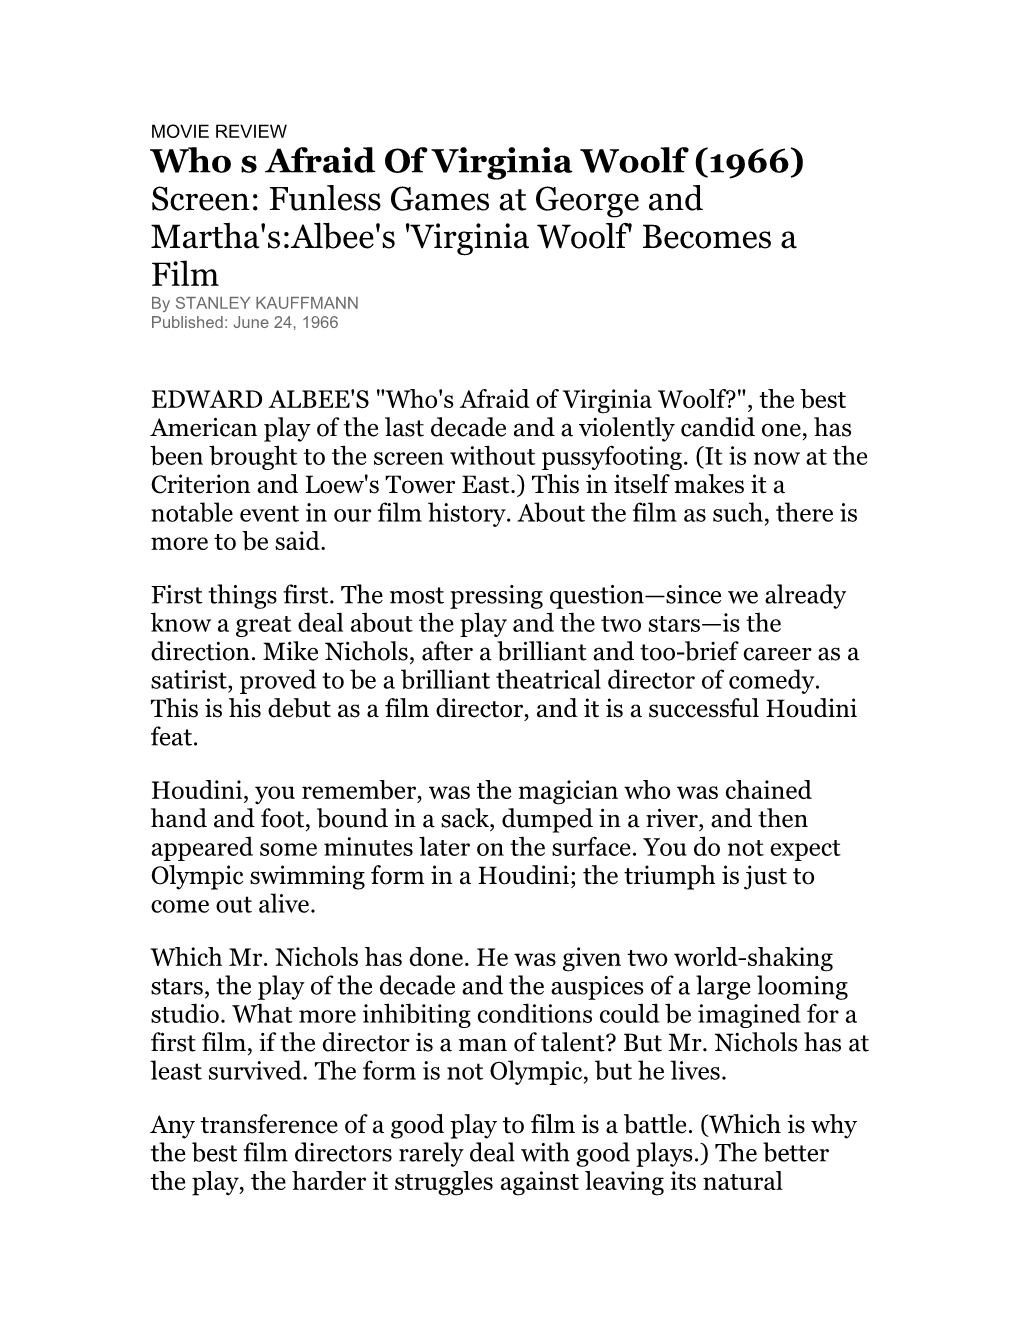 Who S Afraid of Virginia Woolf (1966)